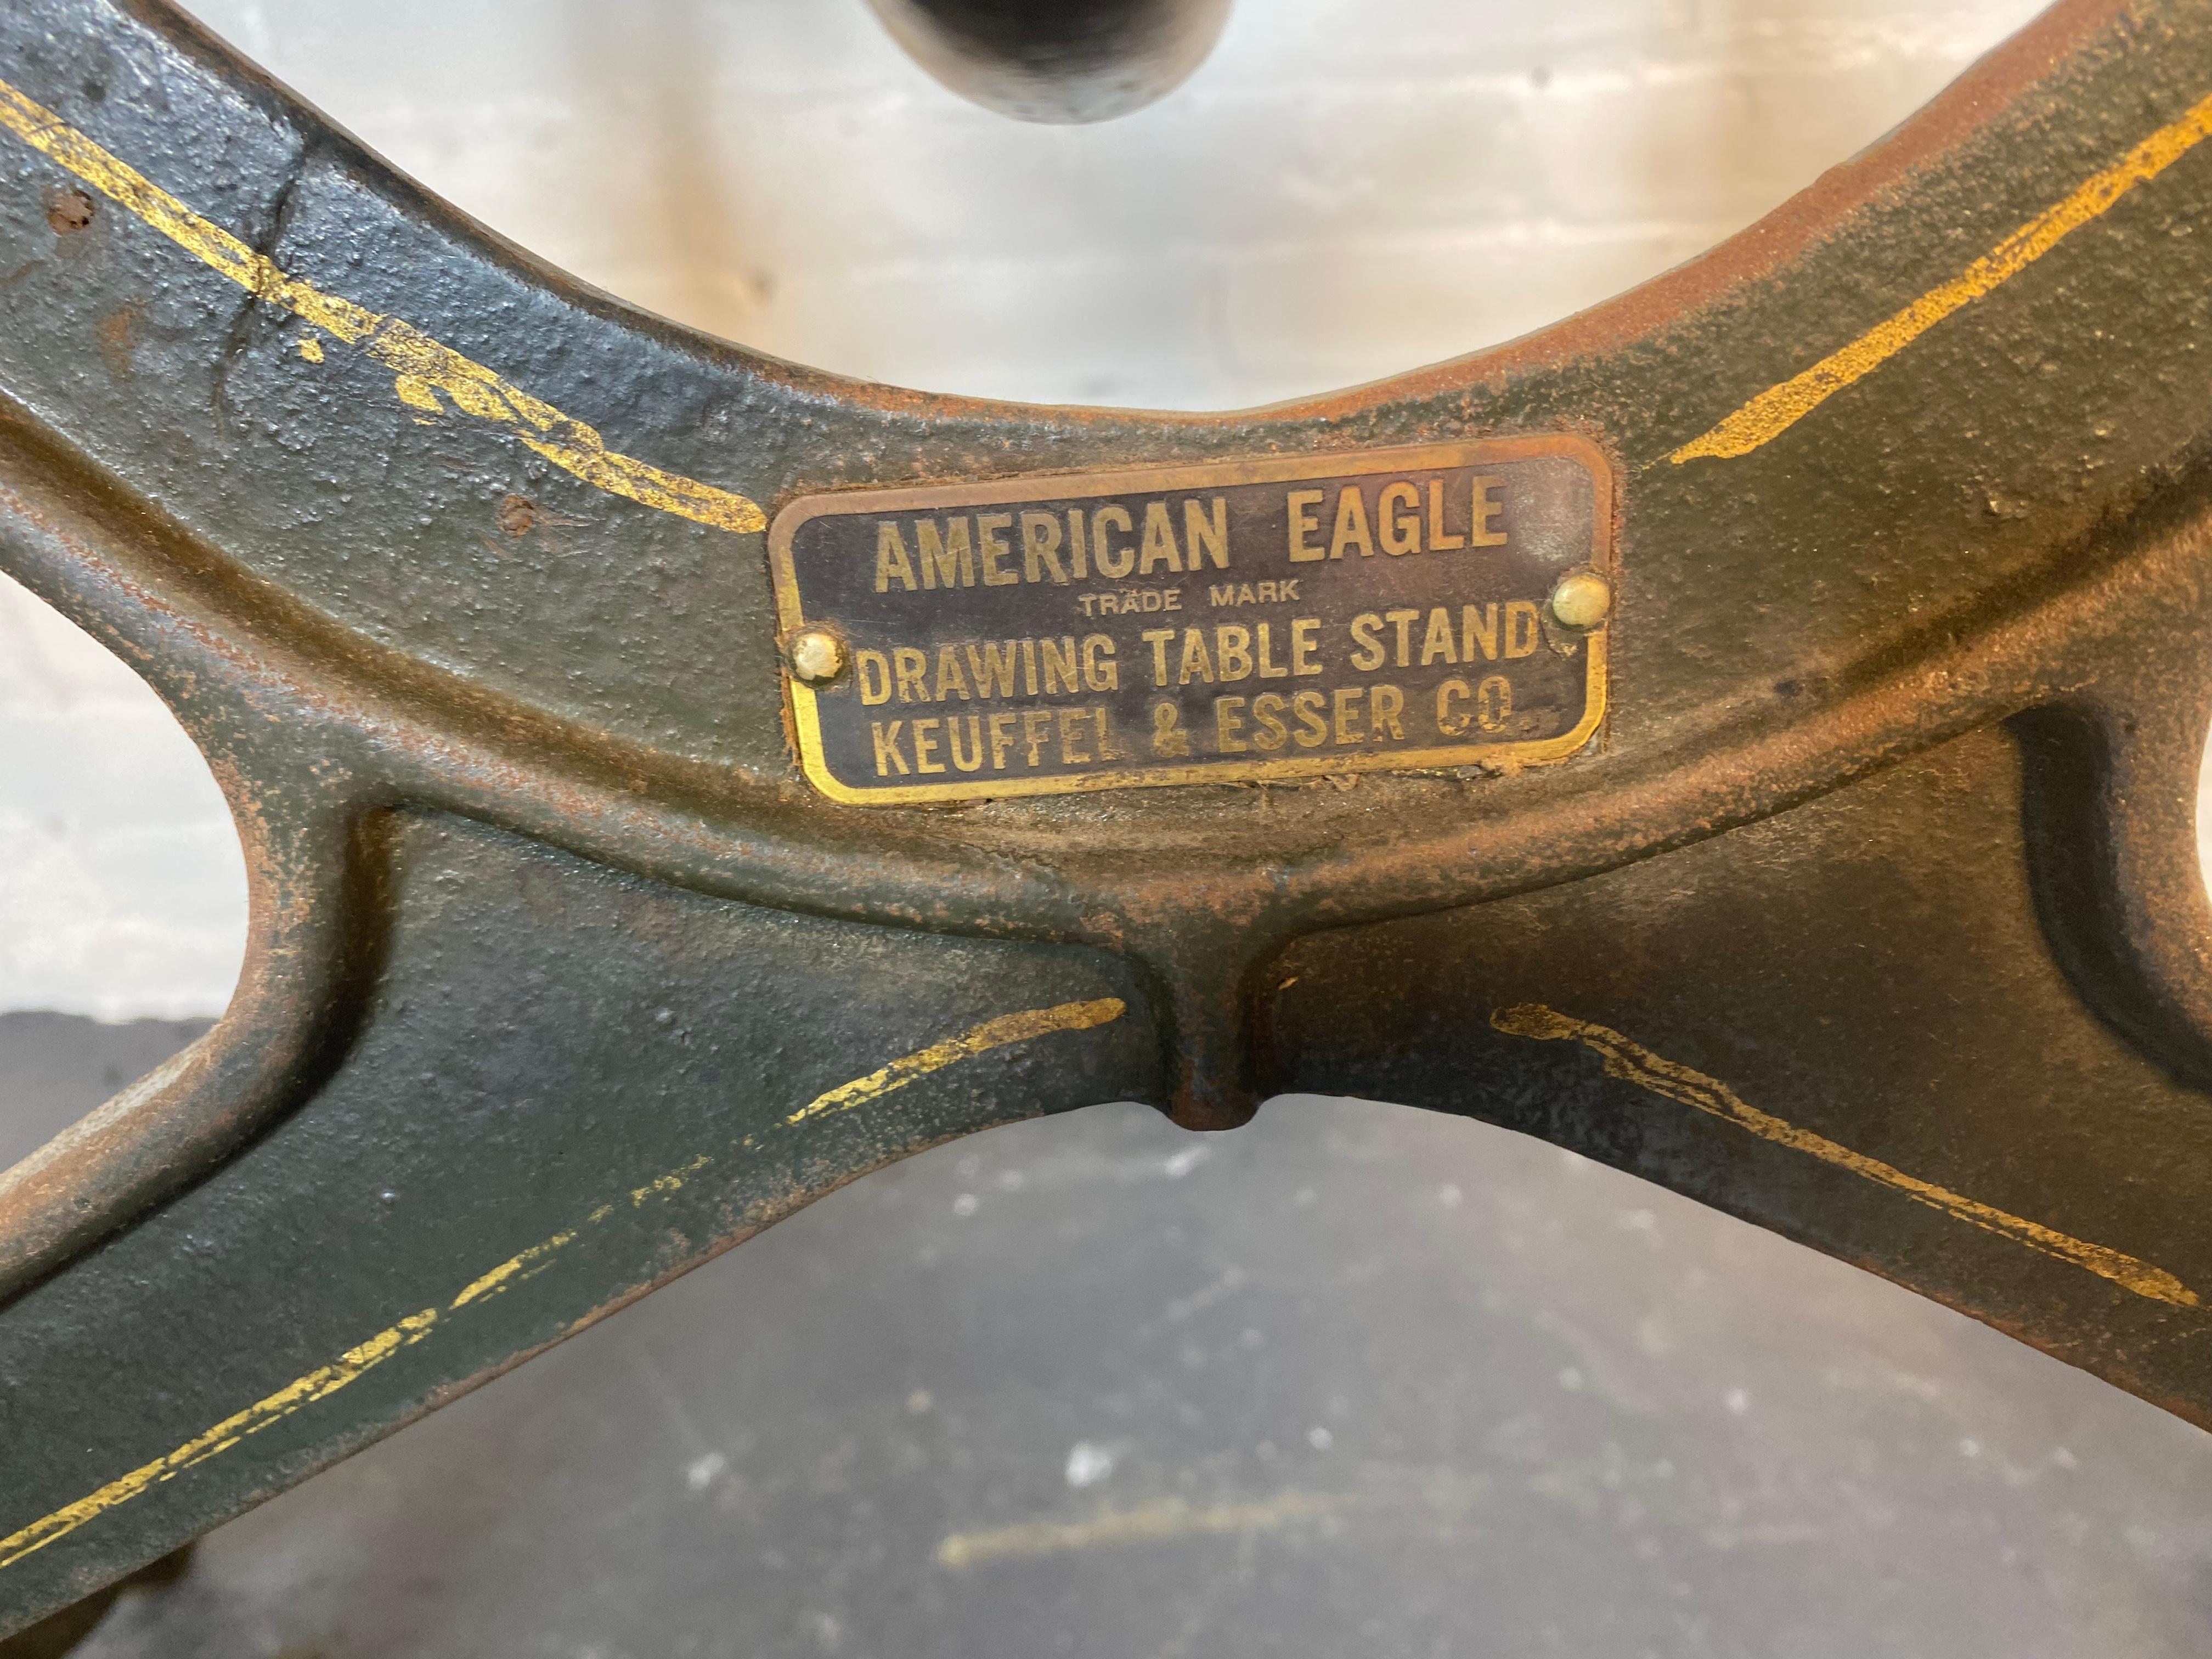 Table à dessin en forme d'aigle américain des années 1920 par Keuffel & Esser Co.
Dimensions totales : 32″ x 51″

Plage de hauteur lorsque le plateau est à plat : 37″ - 48″.

MATERIAL : Fonte et bois